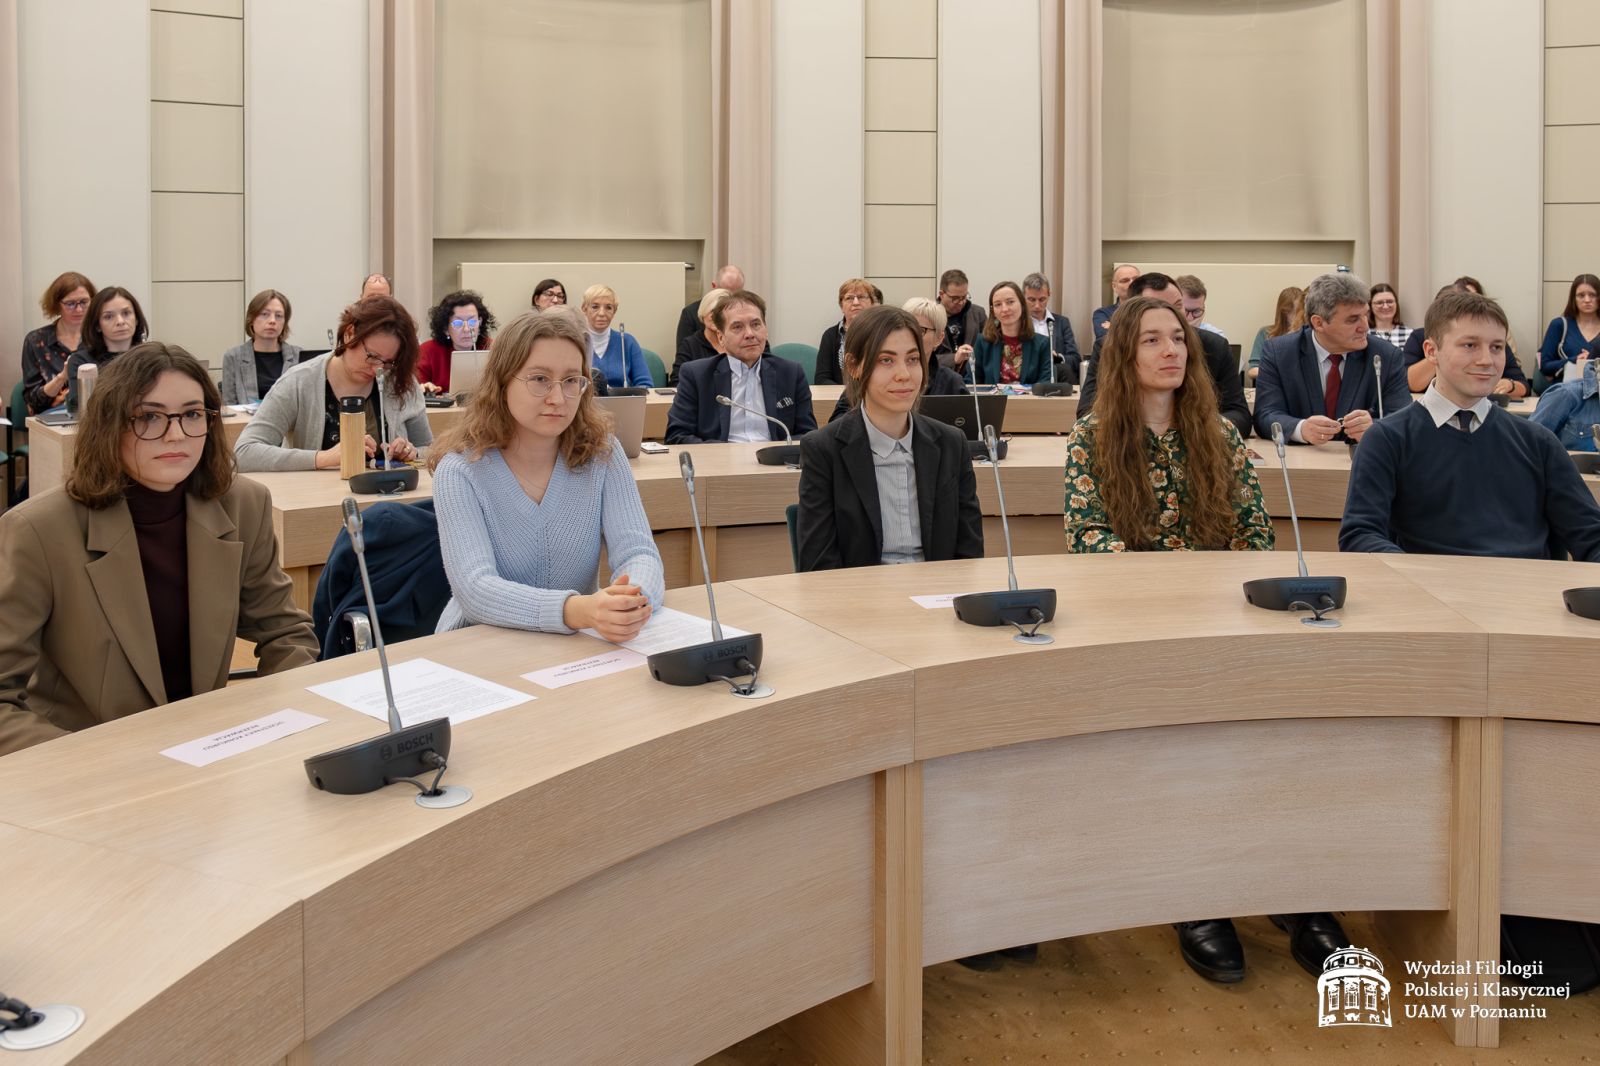 Nagrodzeni w konkursie siedzący w pierwszym rzędzie przy okrągłych ławach w Salonie Mickiewicza.